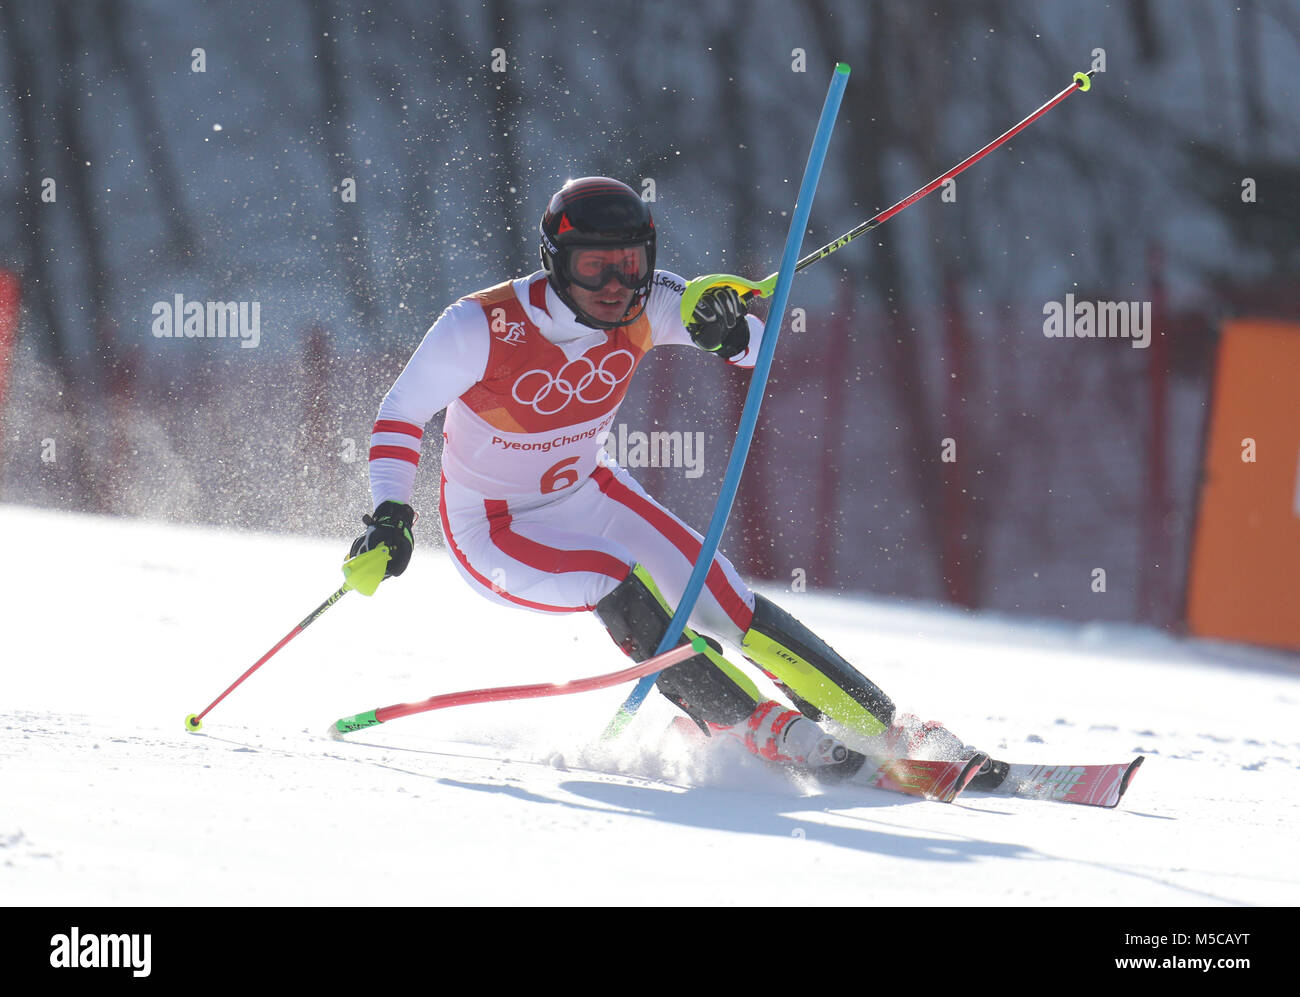 Giochi di sci alpino immagini e fotografie stock ad alta risoluzione - Alamy